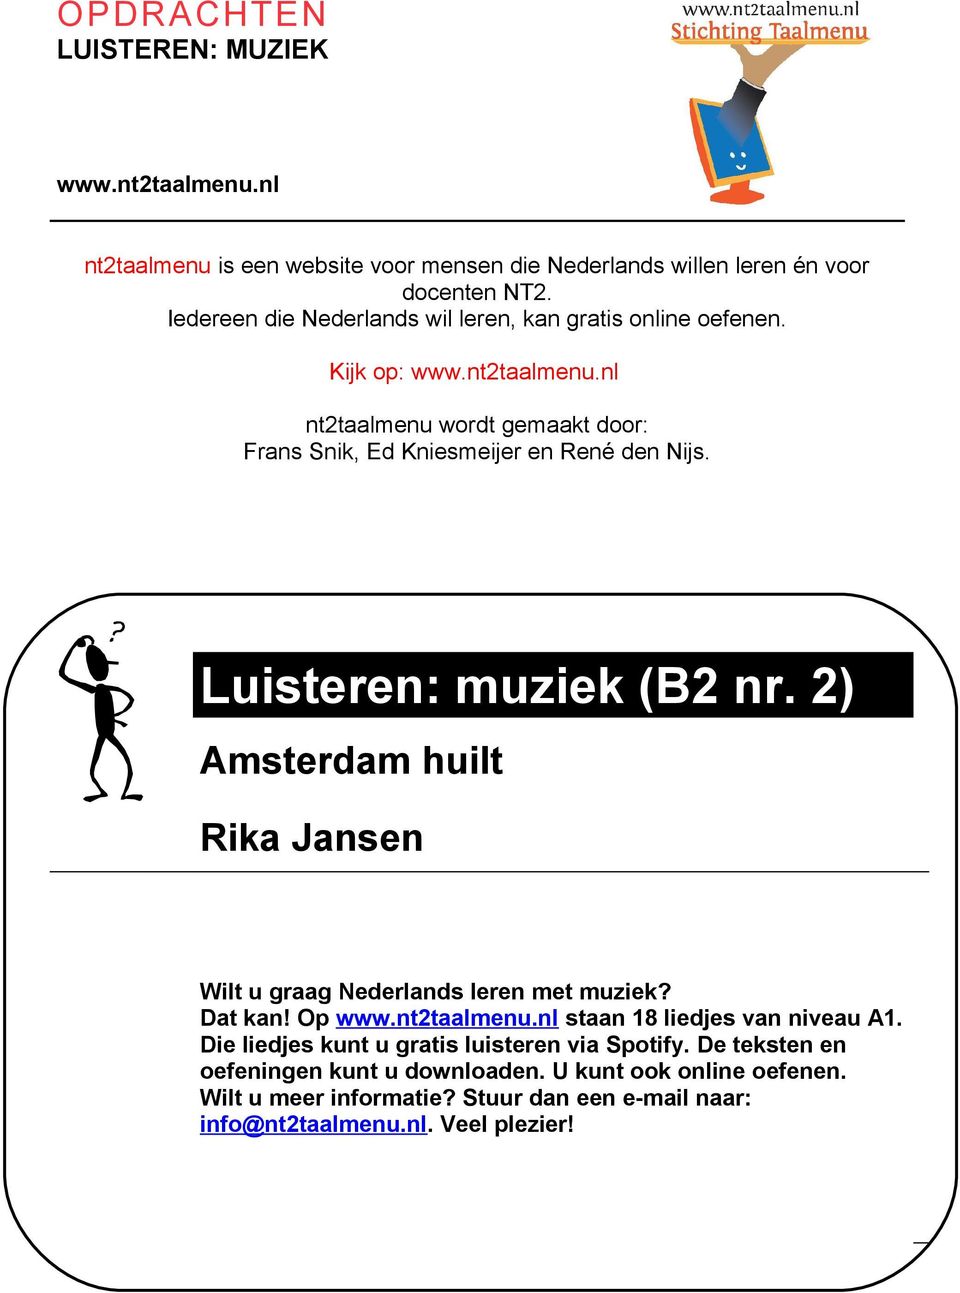 Wat leer je? Luisteren: muziek (B2 nr. 2) Amsterdam huilt Rika Jansen Wilt u graag Nederlands leren met muziek? Dat kan! Op www.nt2taalmenu.